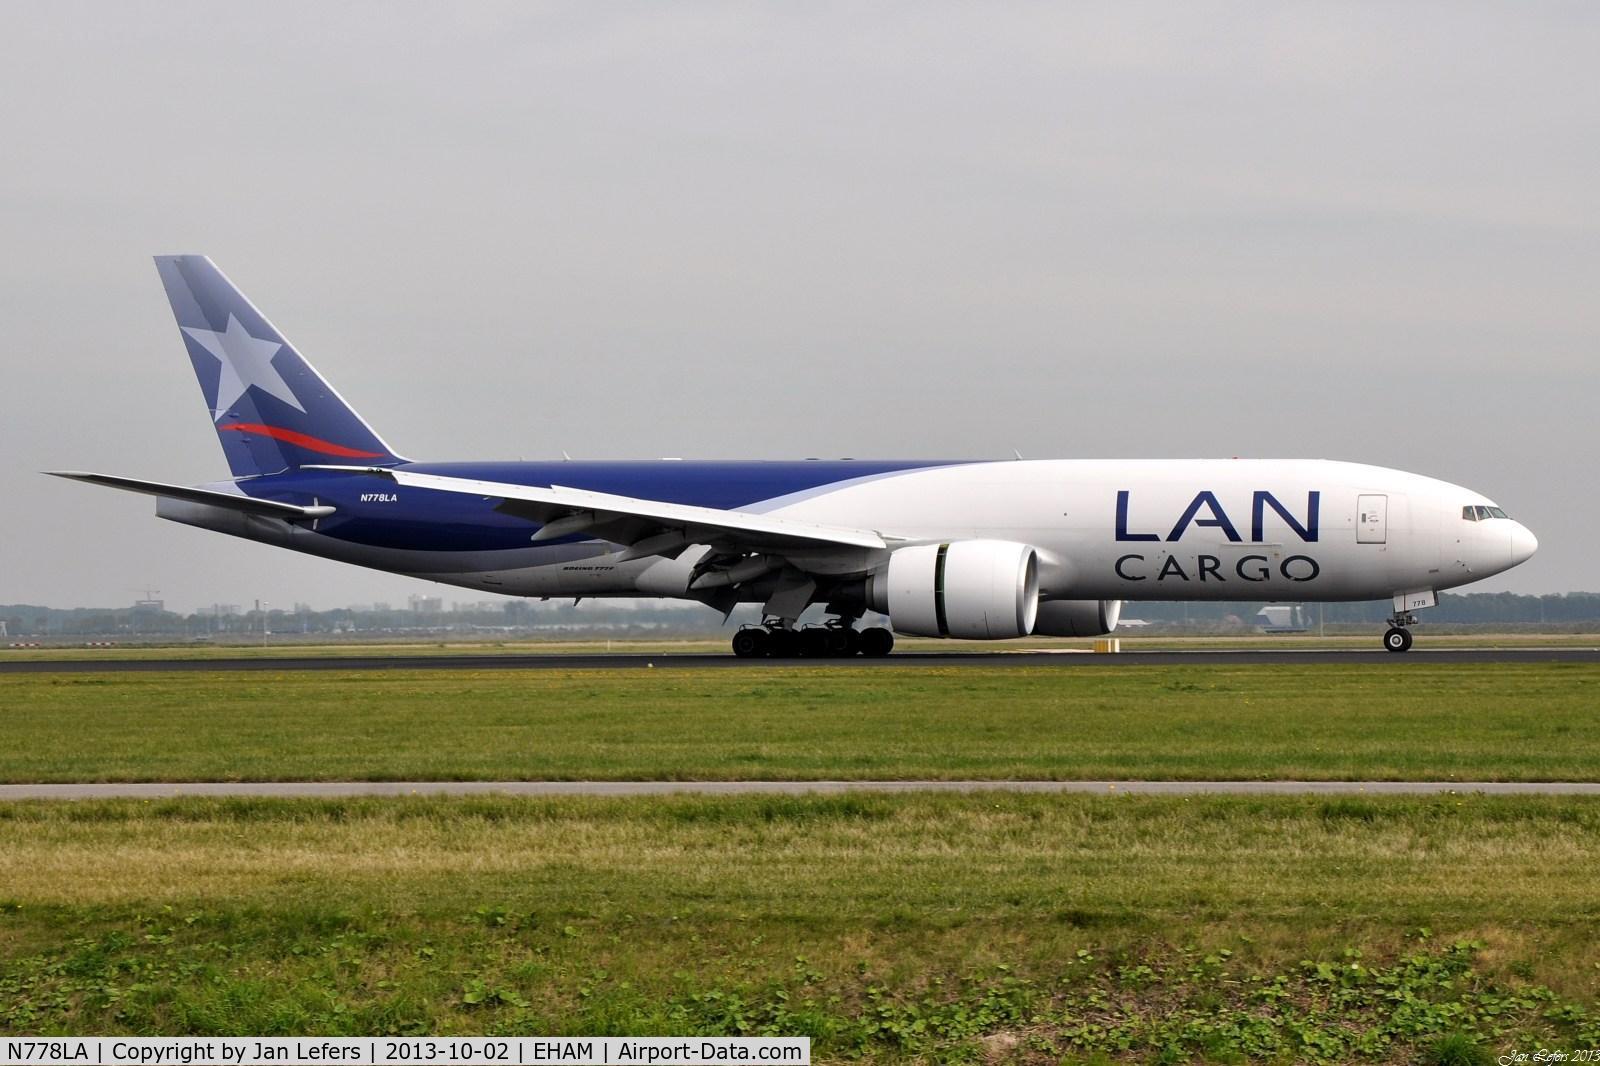 N778LA, 2012 Boeing 777-F6N C/N 41518, LAN Cargo